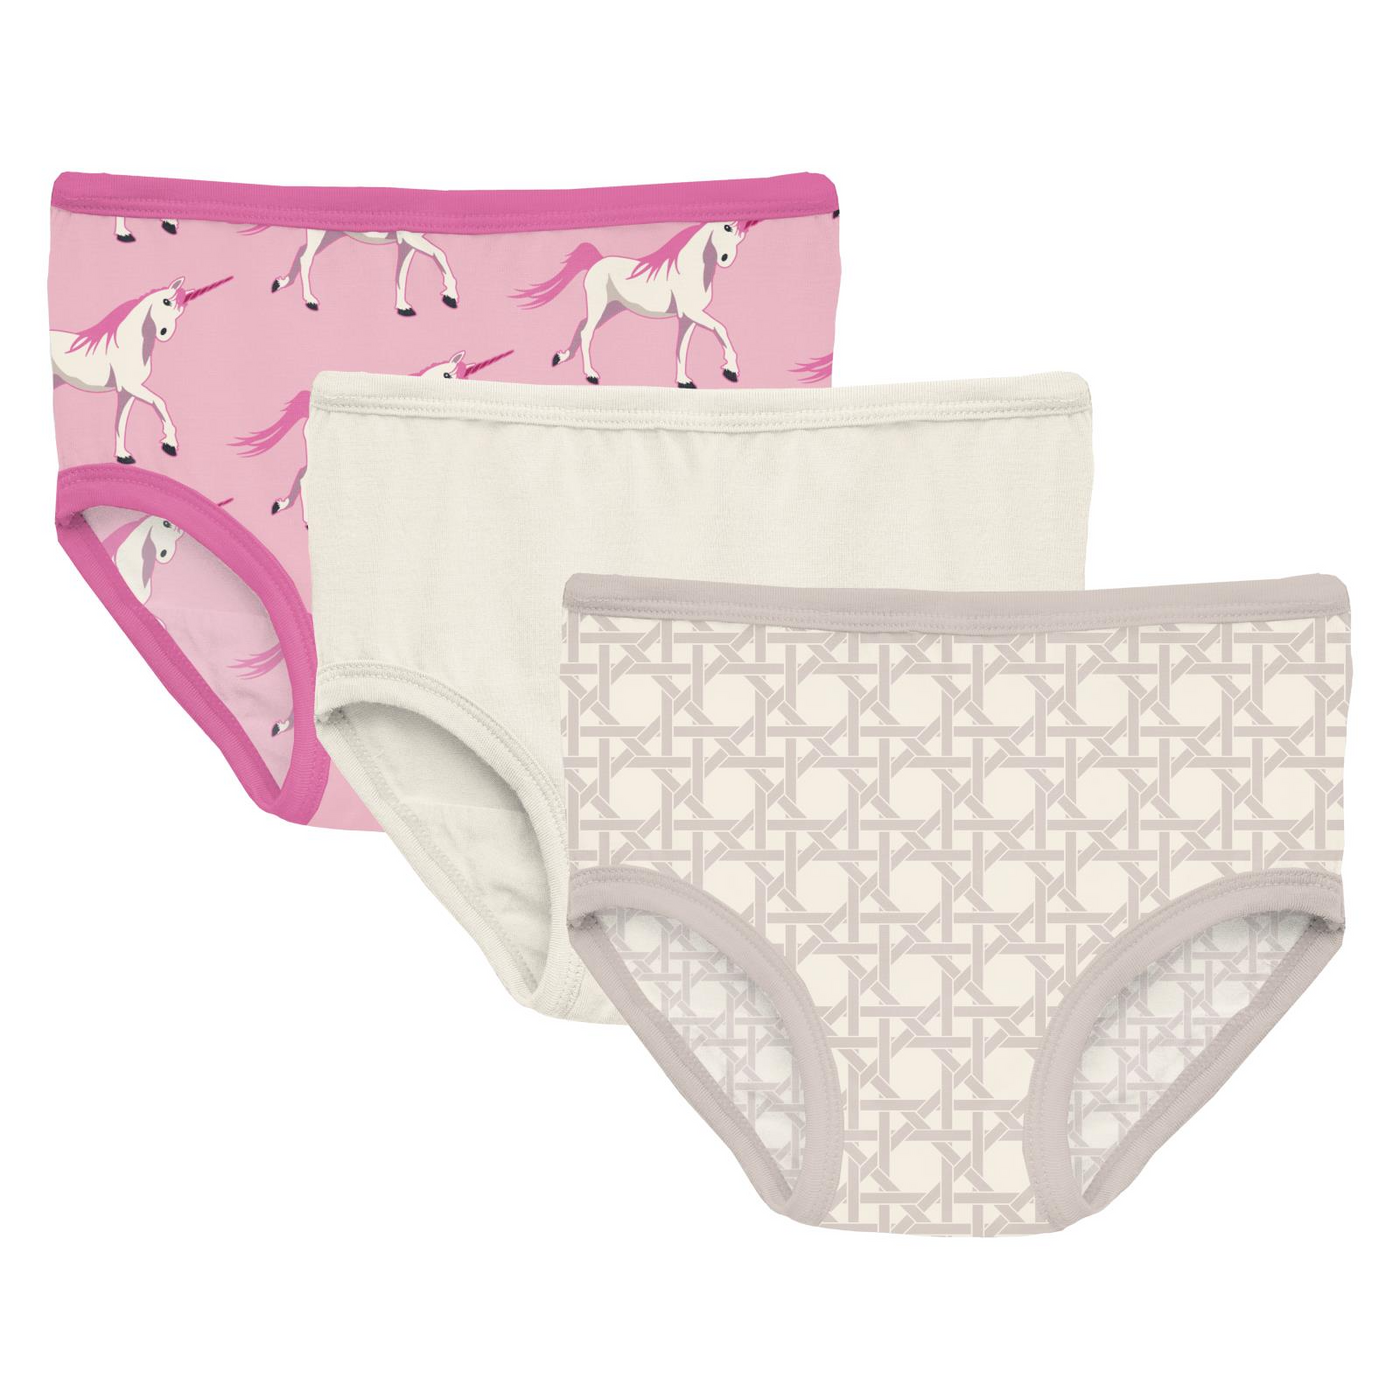 Print of the Week Kickee Pants Girl's Underwear Set of 3: Cake Pop Prancing Unicorn, Natural & Latte Wicker